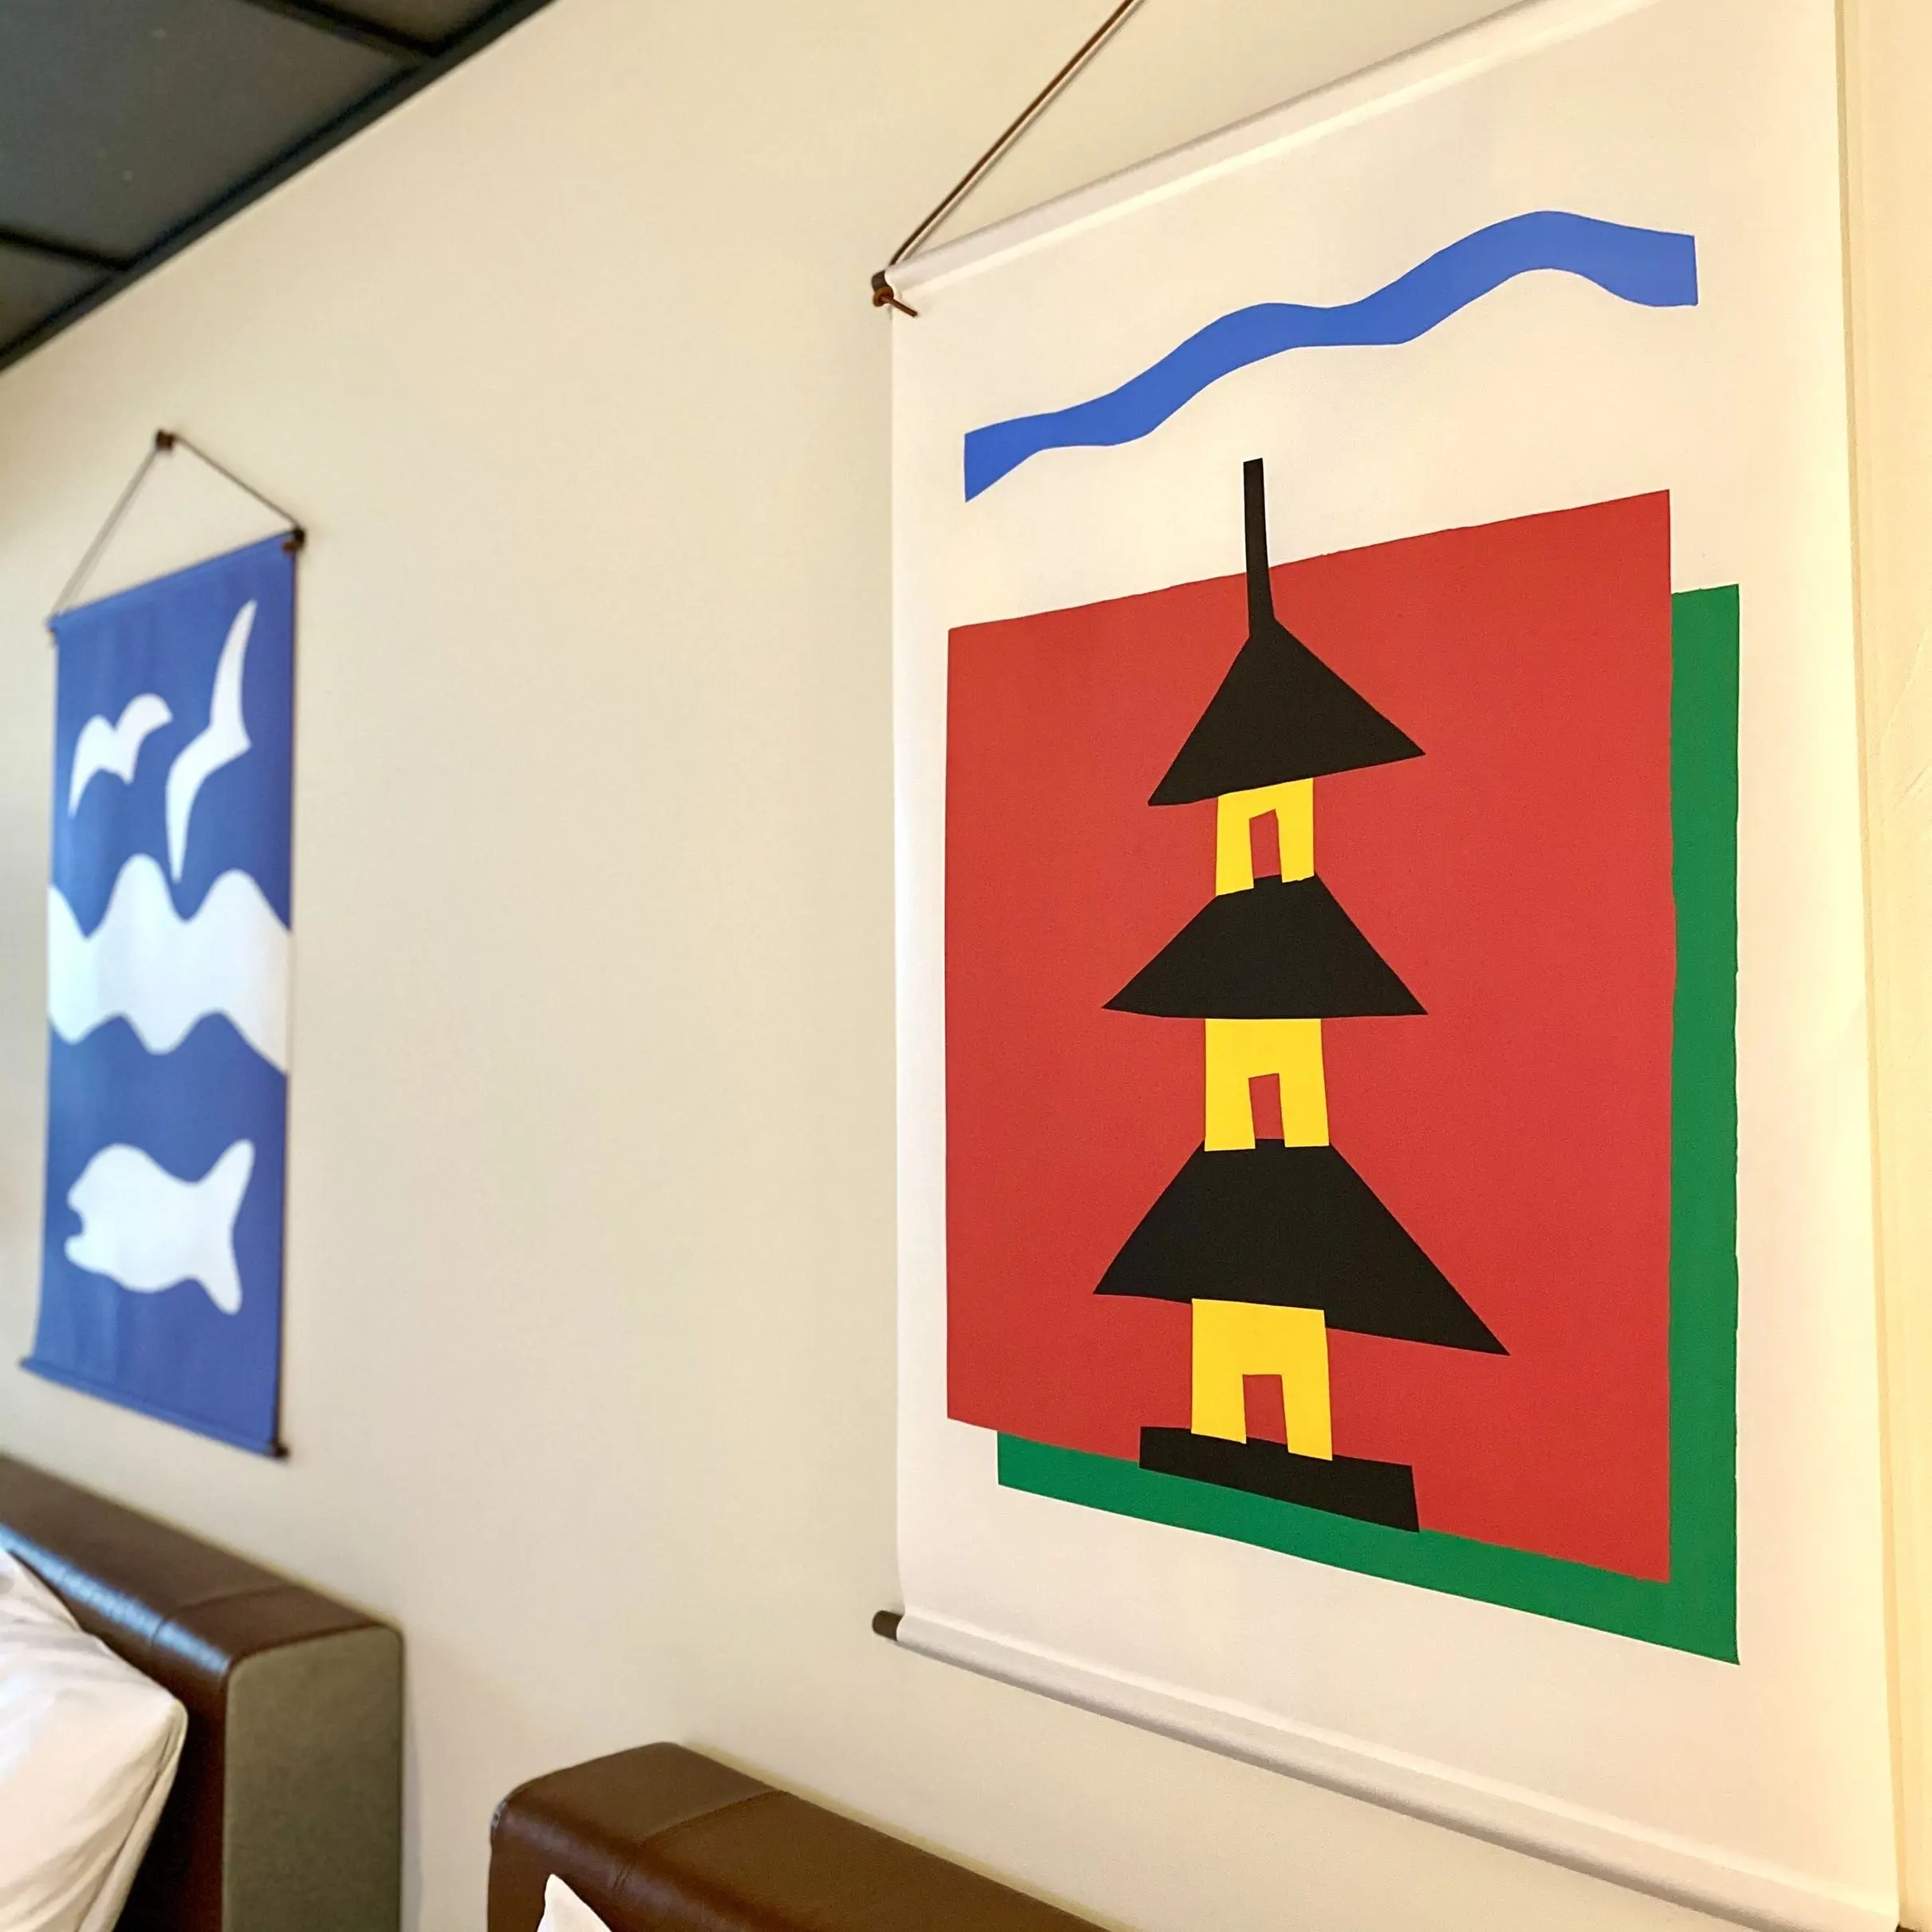 「エースホテル京都」部屋写真、柚木沙弥郎氏のアート